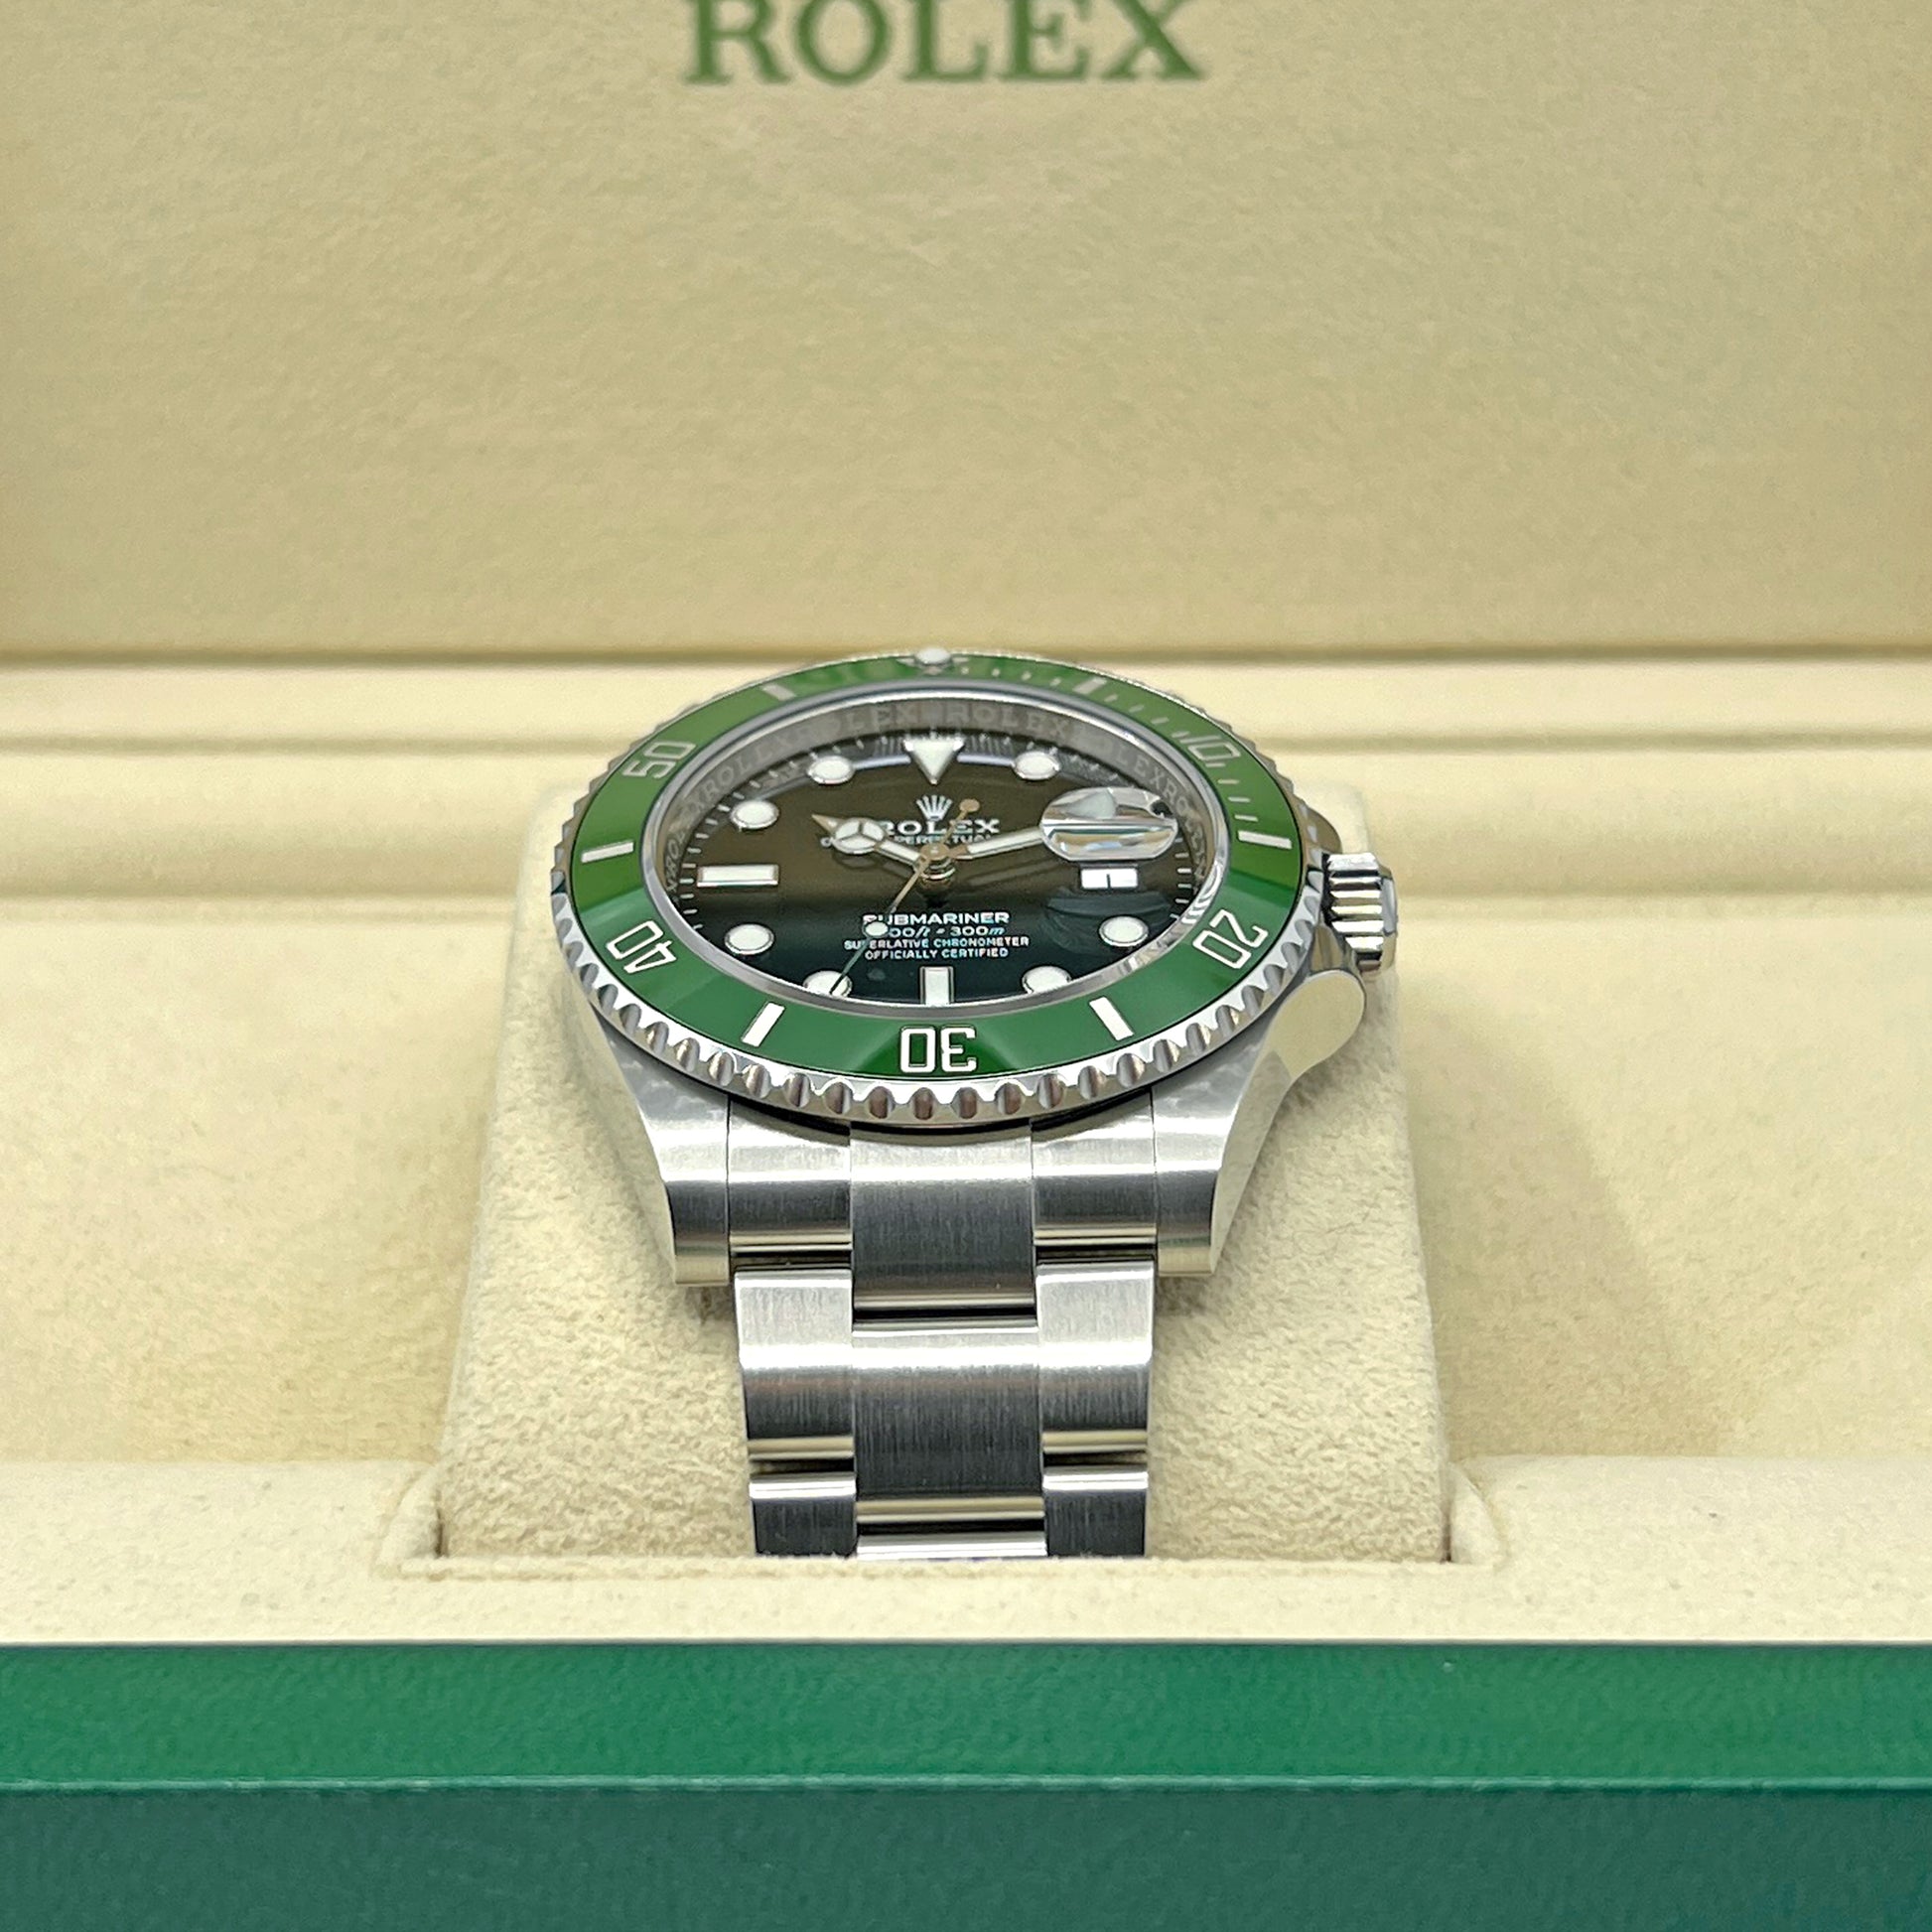 Rolex Submariner Date Watches, ref 116610LV, Complete Set